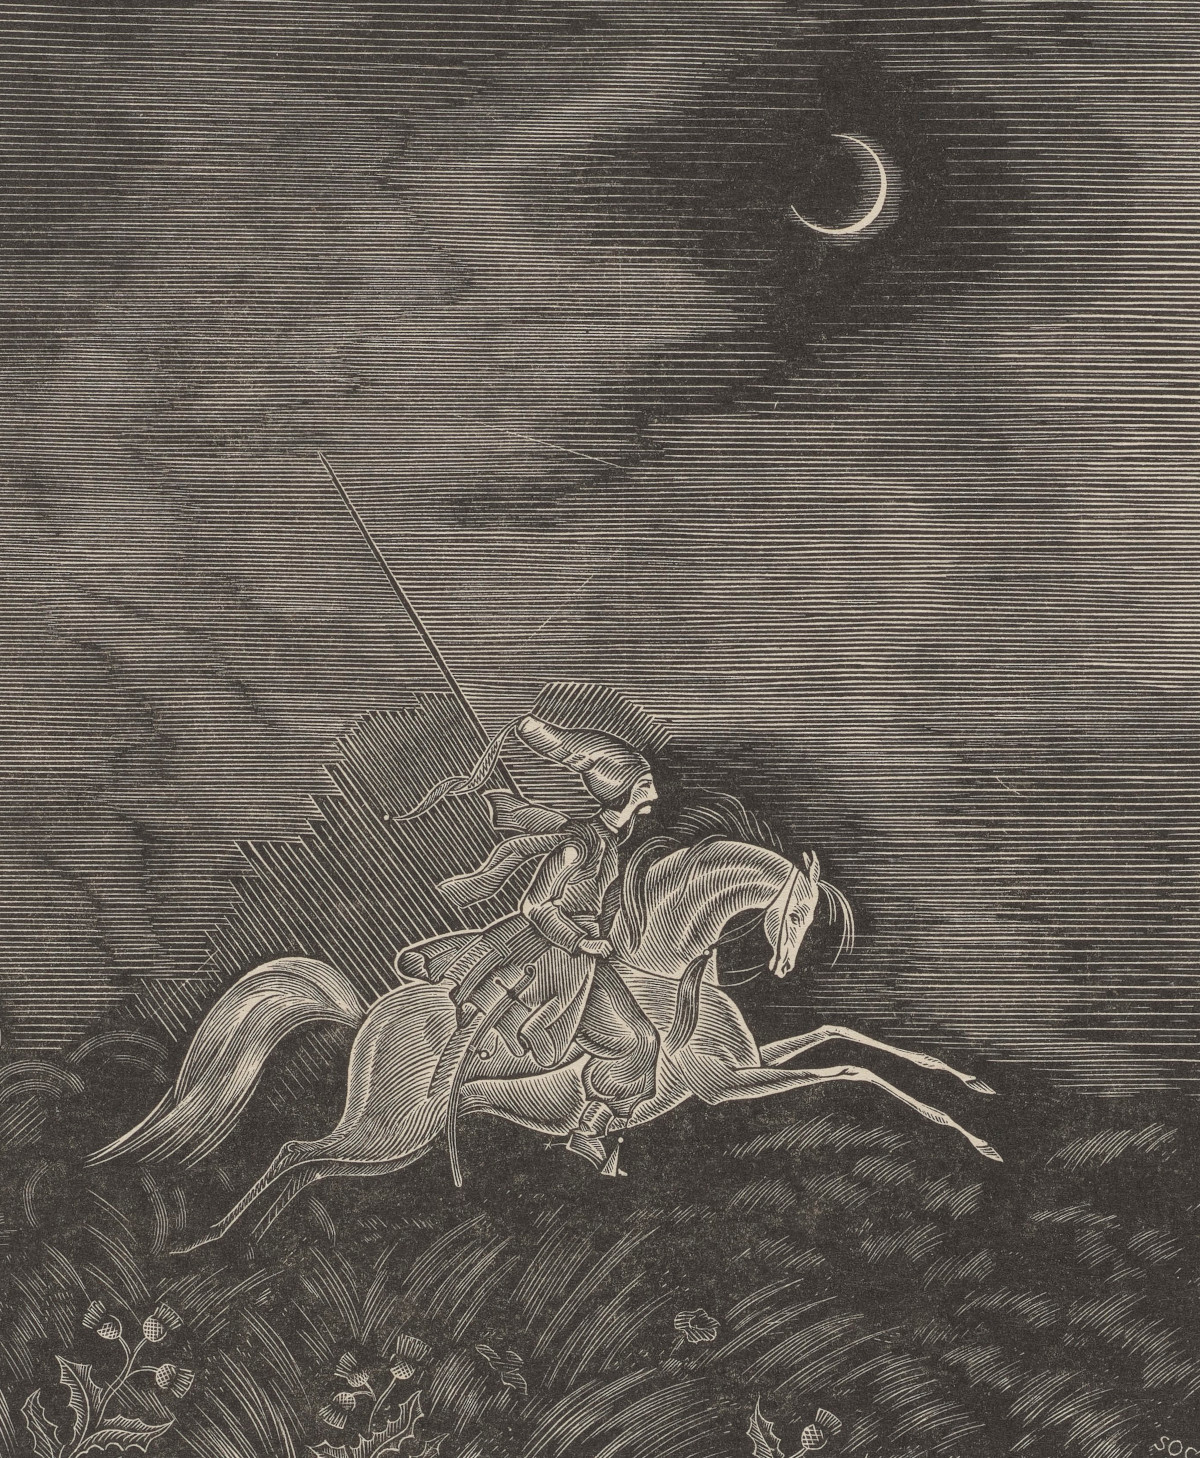 Kozak galopujący na białym koniu. Ilustracja Stanisława Ostoi-Chrostowskiego do "Marii" Antoniego Malczewskiego, 1933 r. Fot. Polona